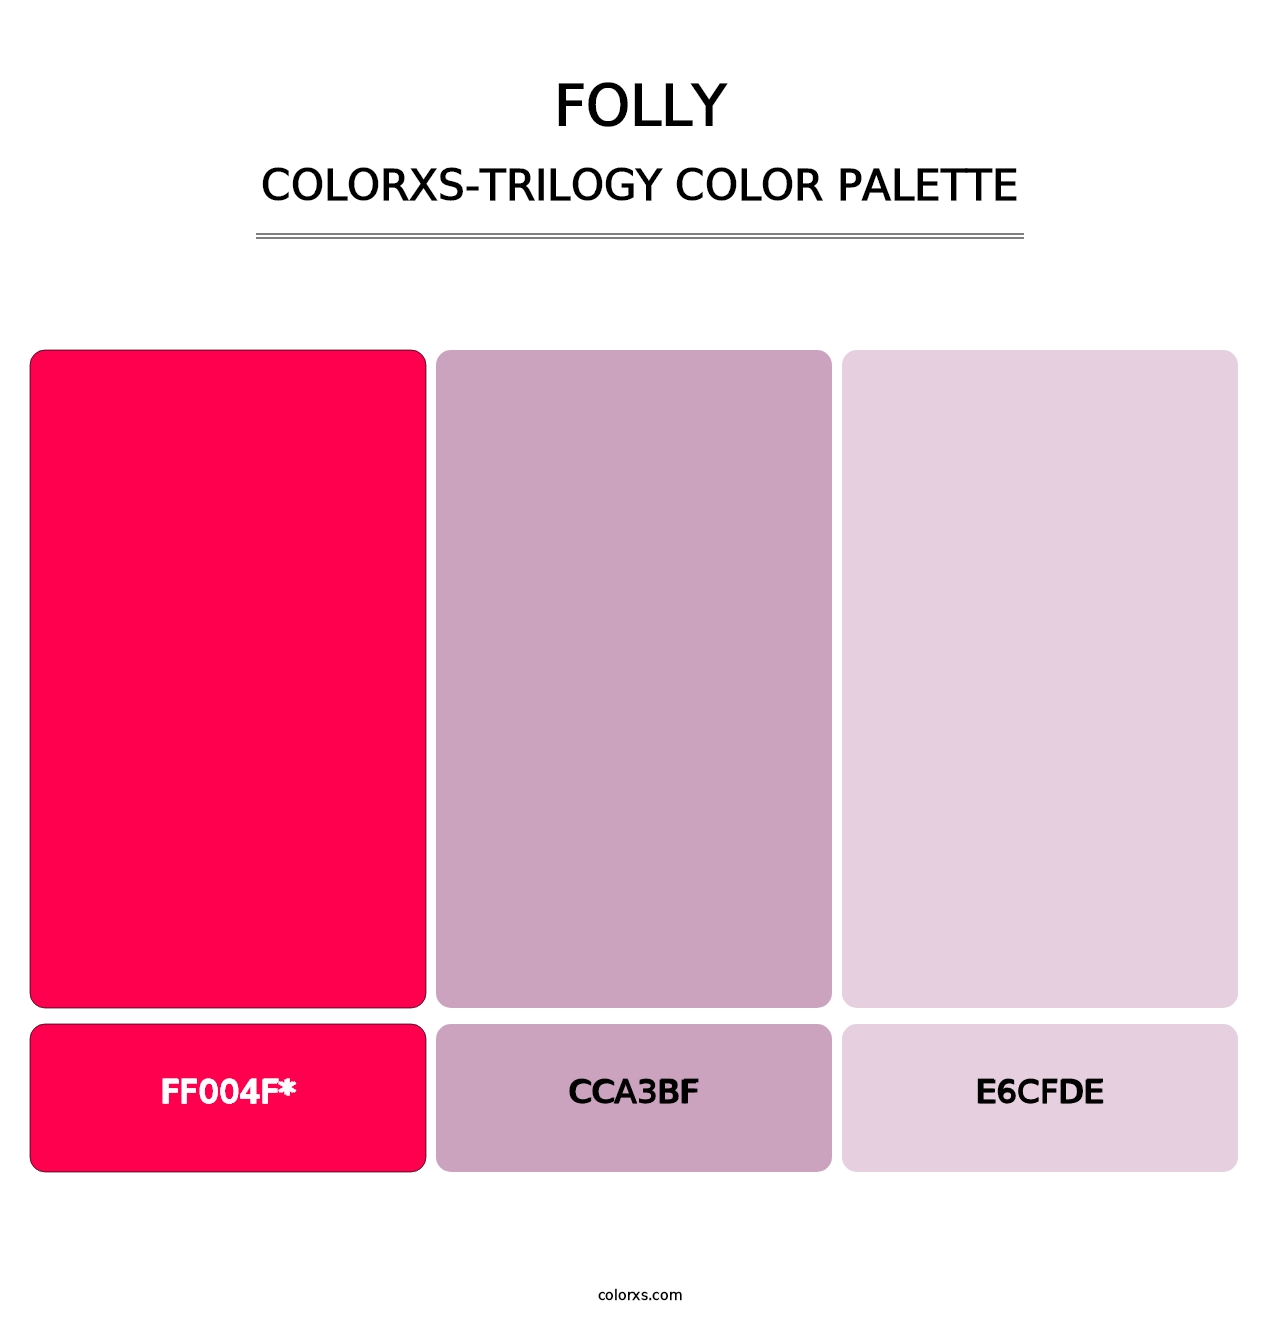 Folly - Colorxs Trilogy Palette